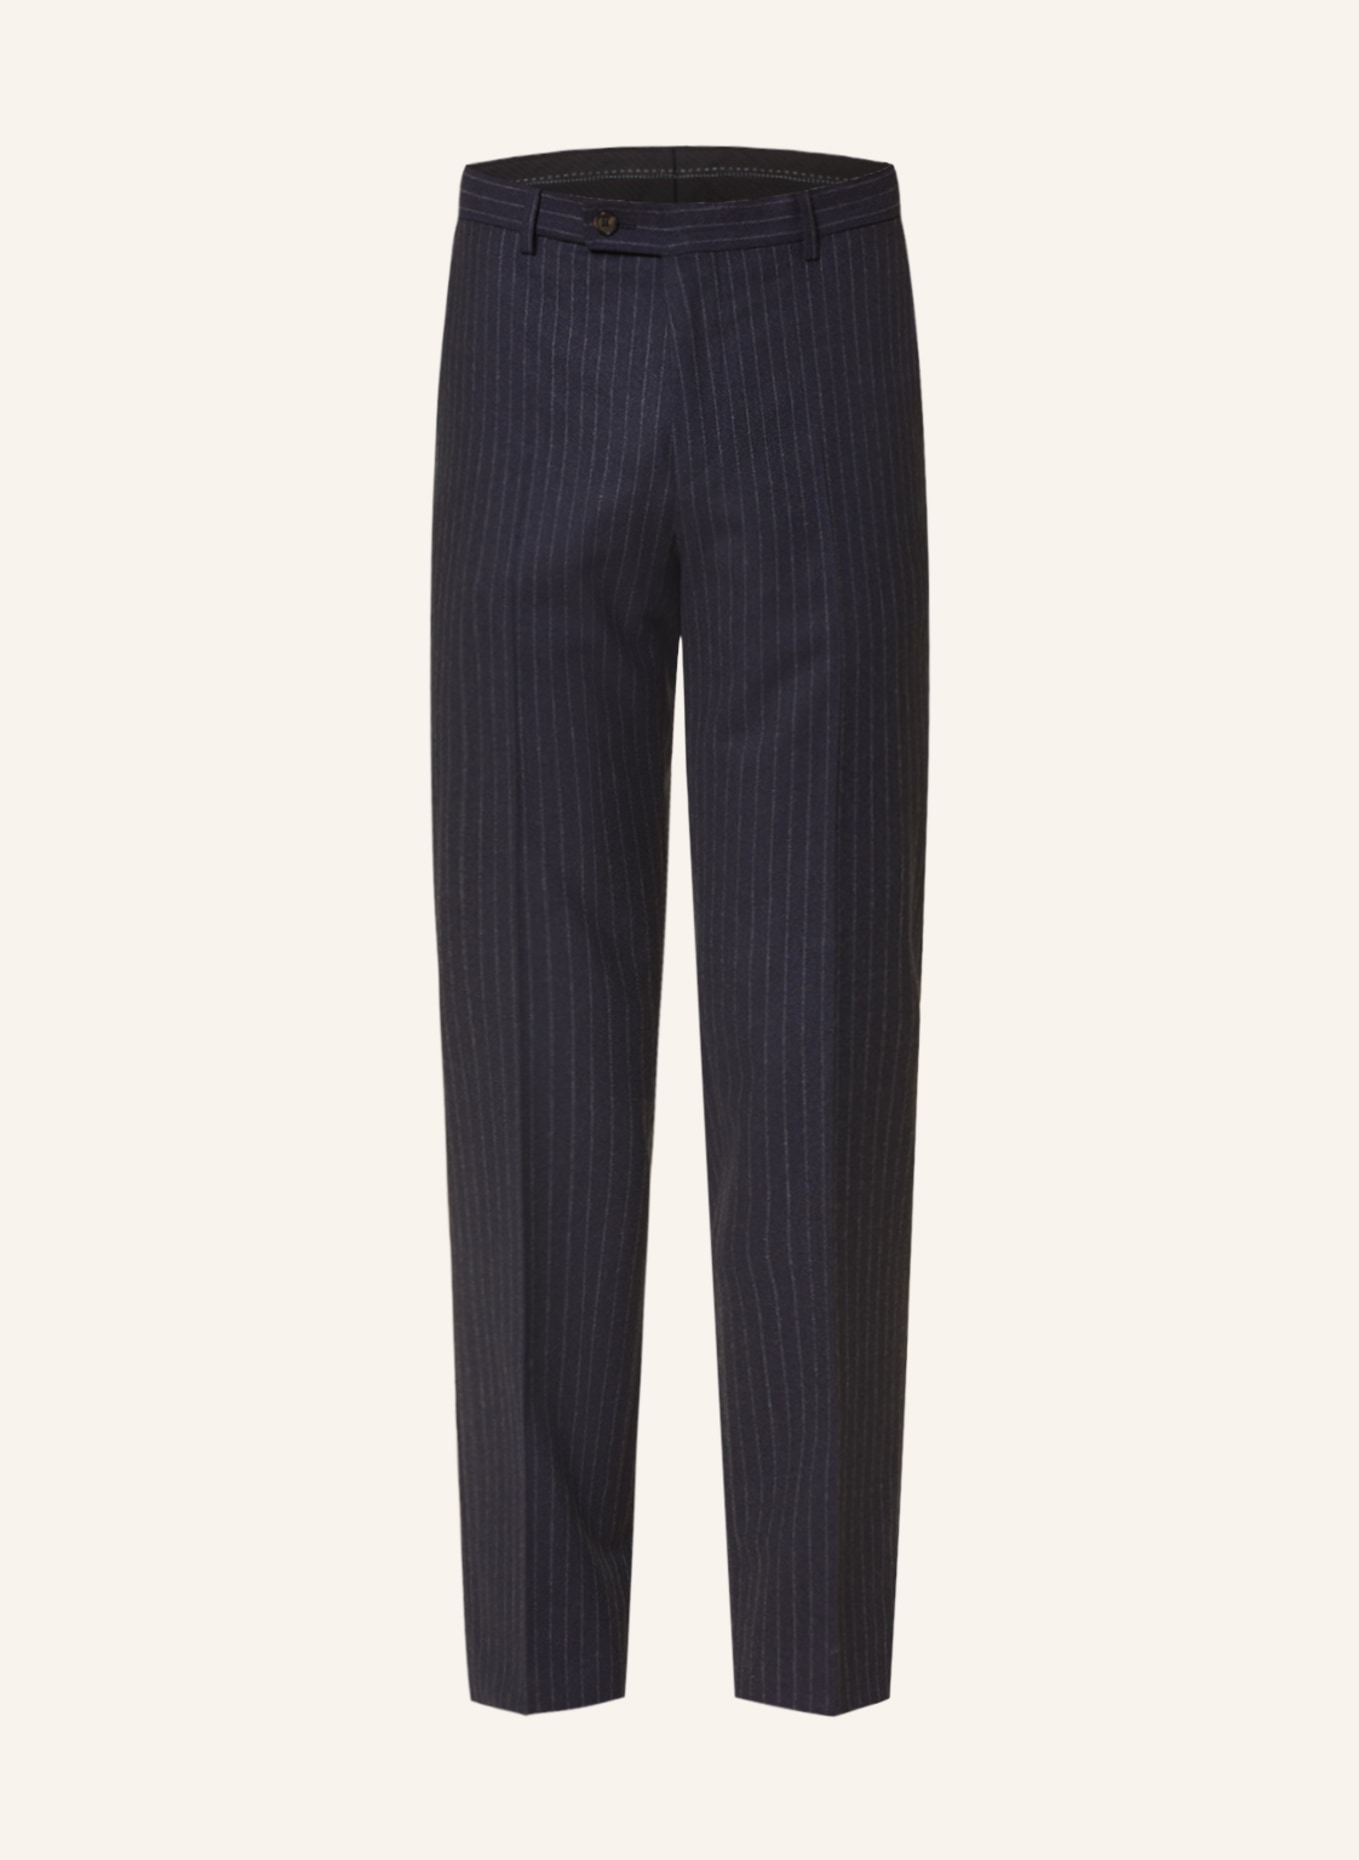 SAND COPENHAGEN Anzughose CRAIG Modern Fit, Farbe: 590 NAVY (Bild 1)